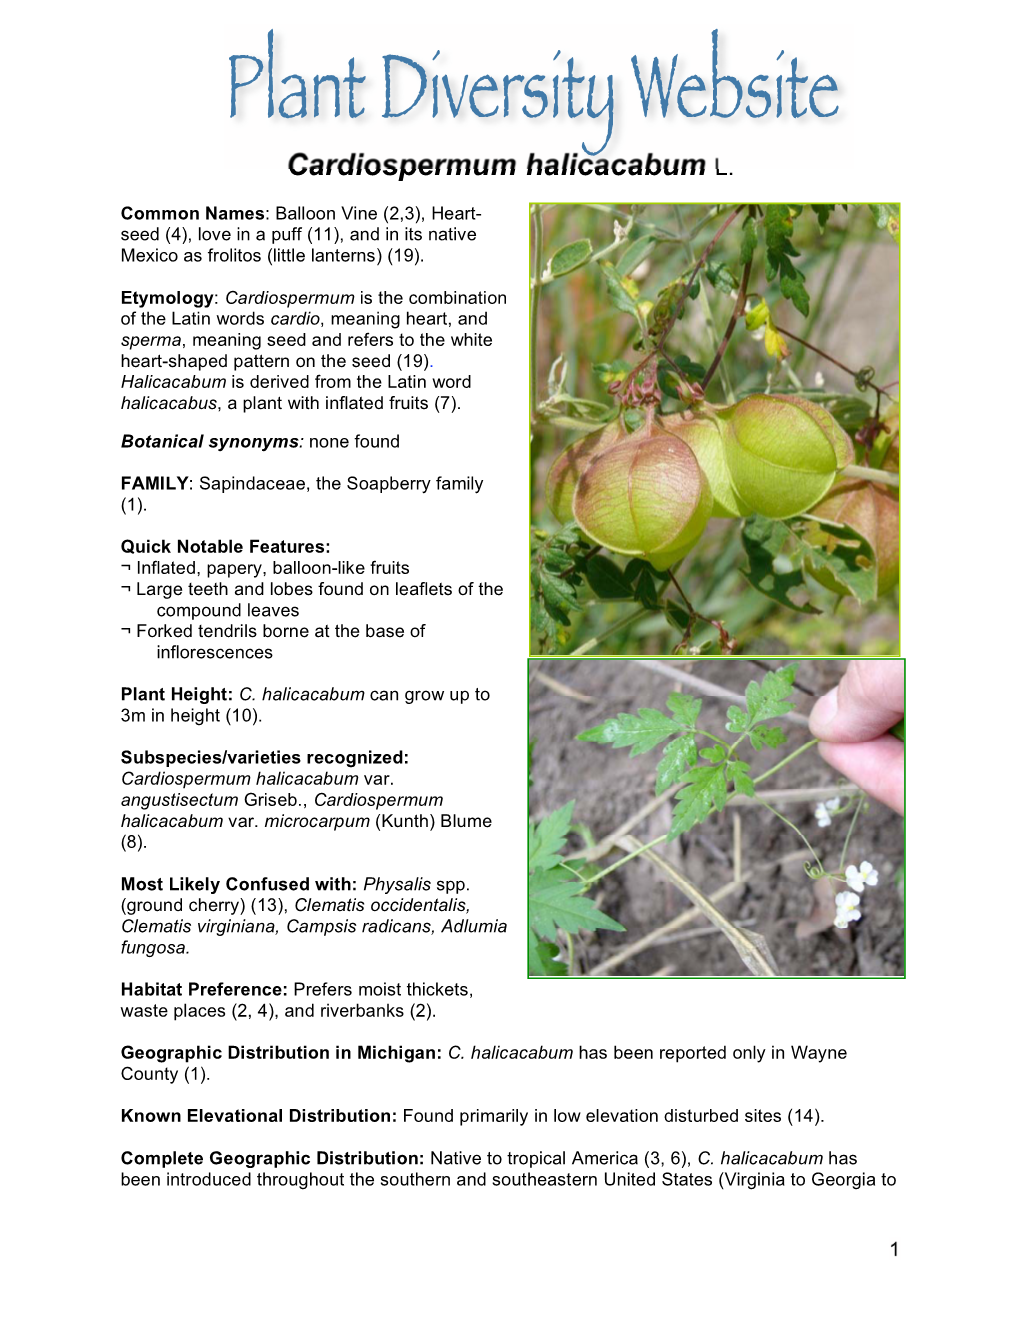 Cardiospermum Halicacabum L